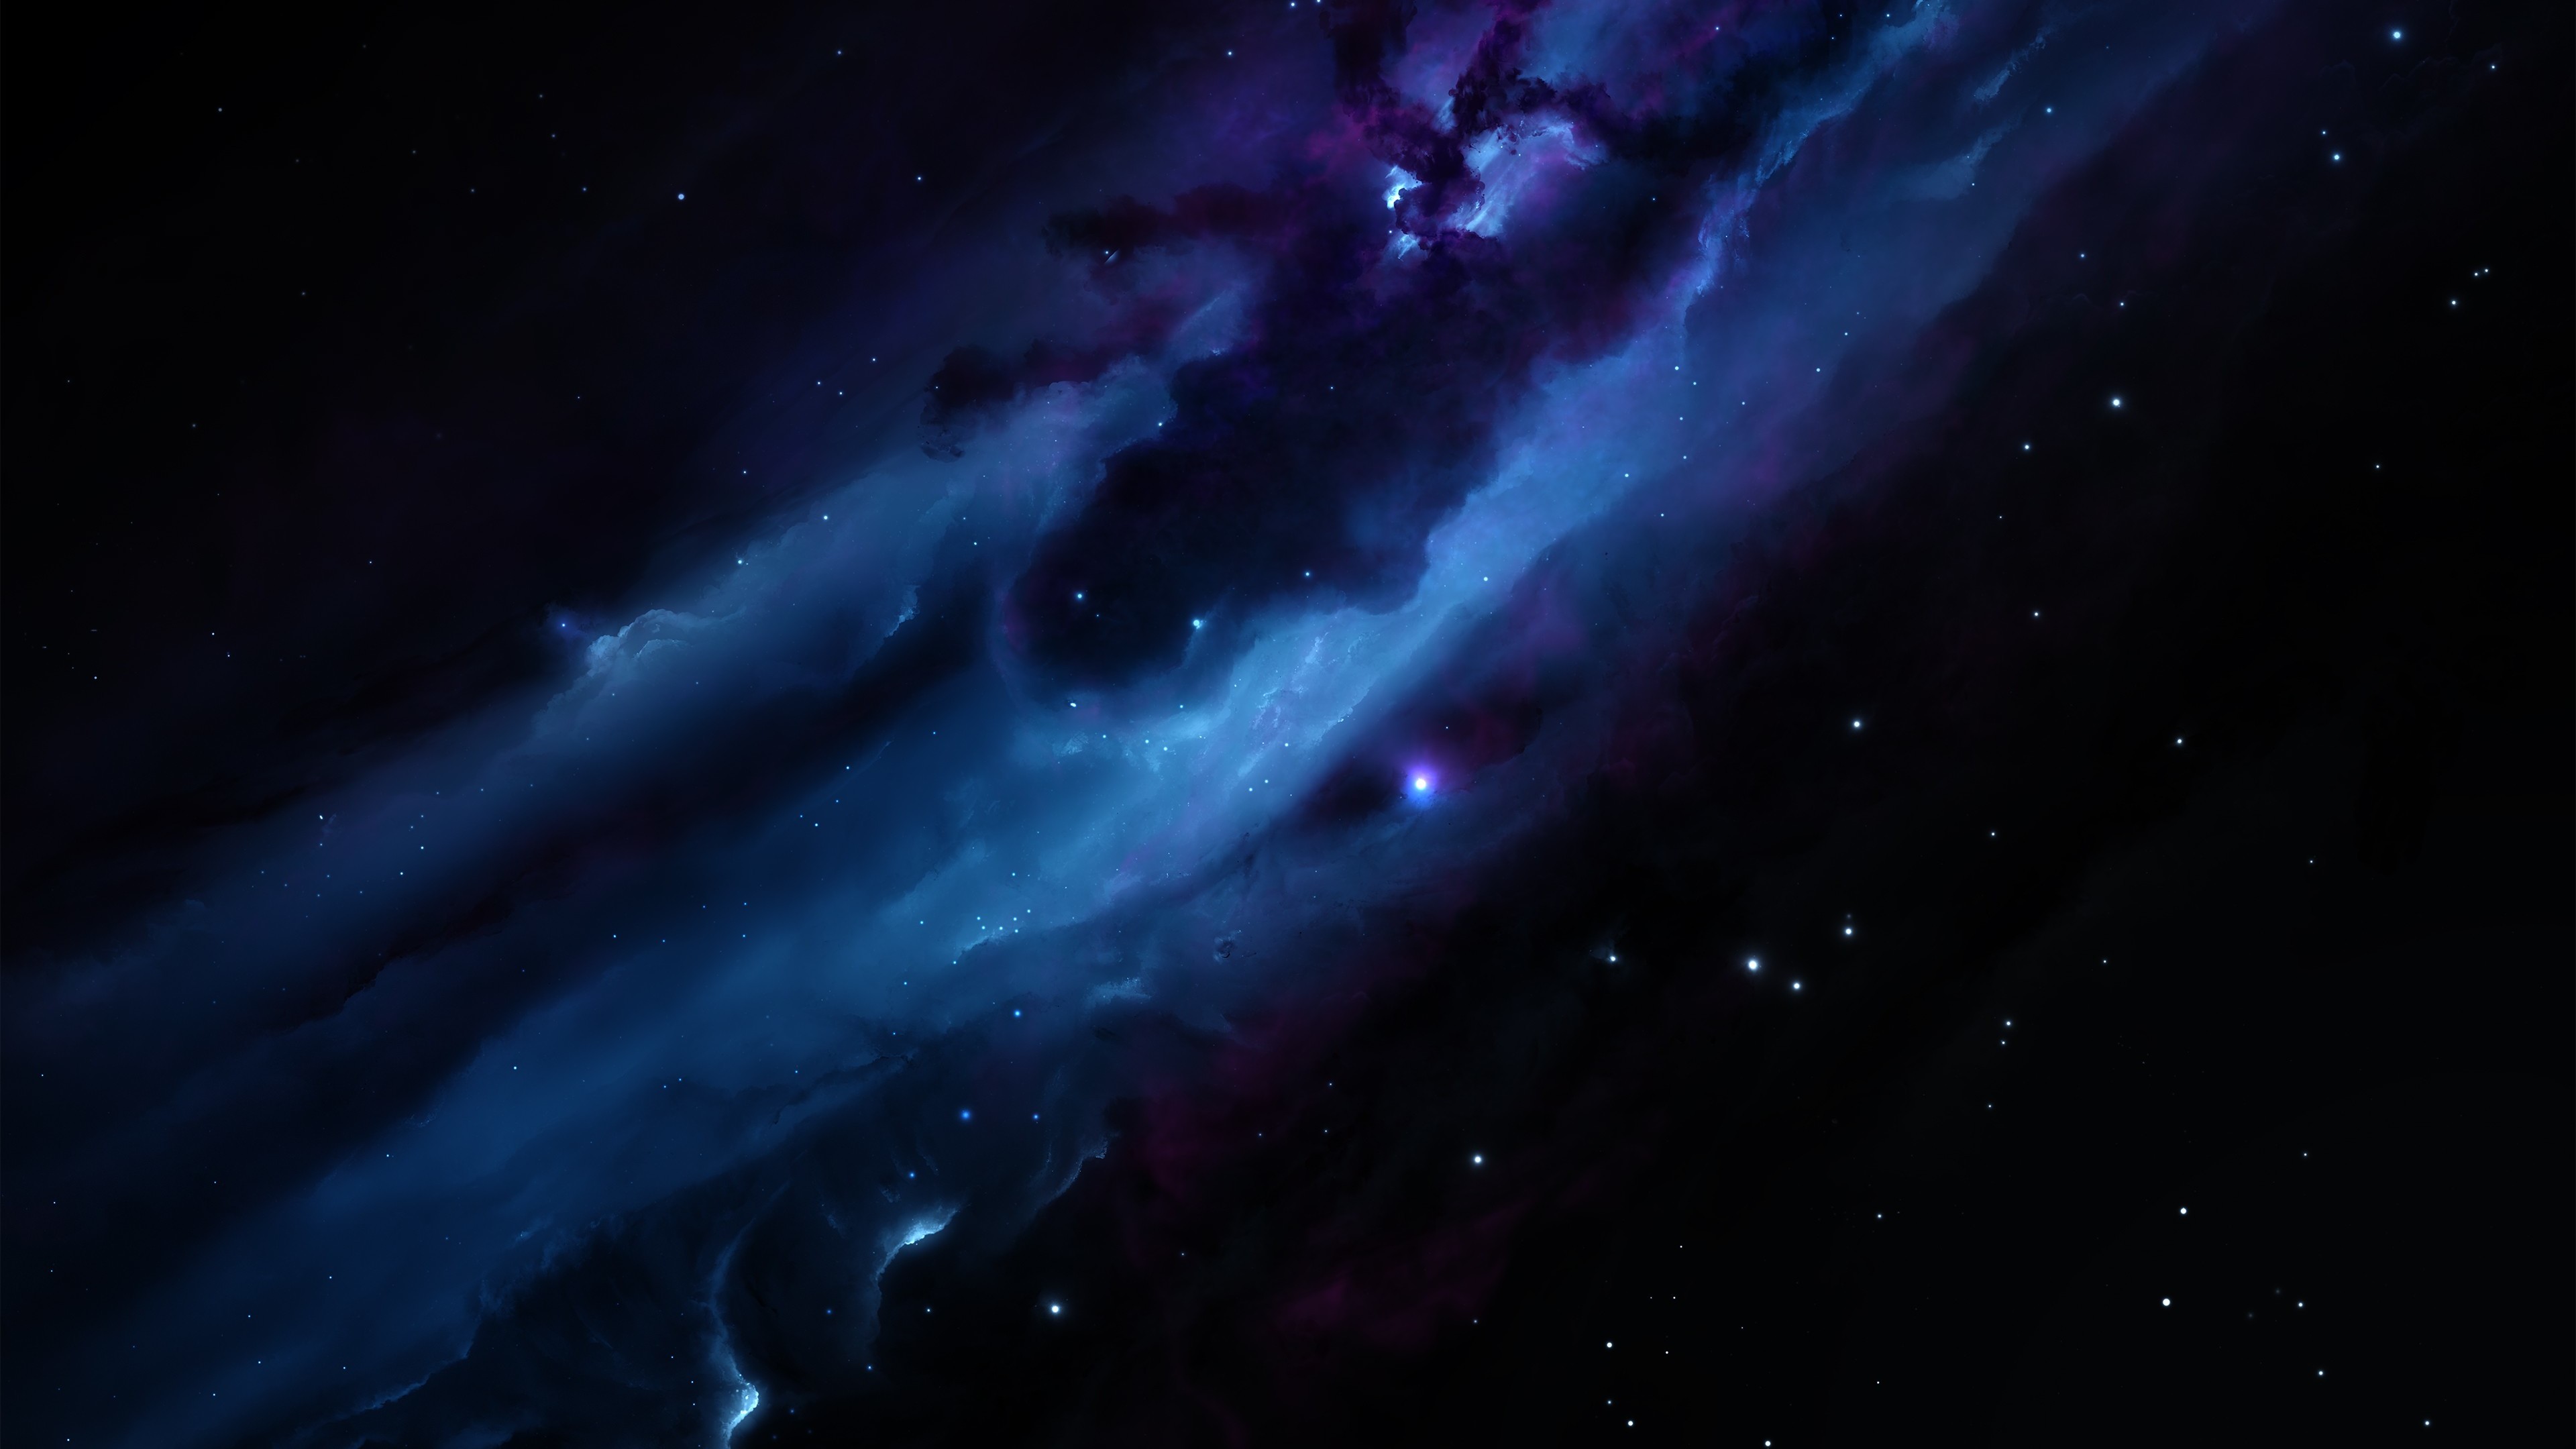 nebula 4k 1546279228 - Nebula 4k - nebula wallpapers, nature wallpapers, hd-wallpapers, digital universe wallpapers, 4k-wallpapers